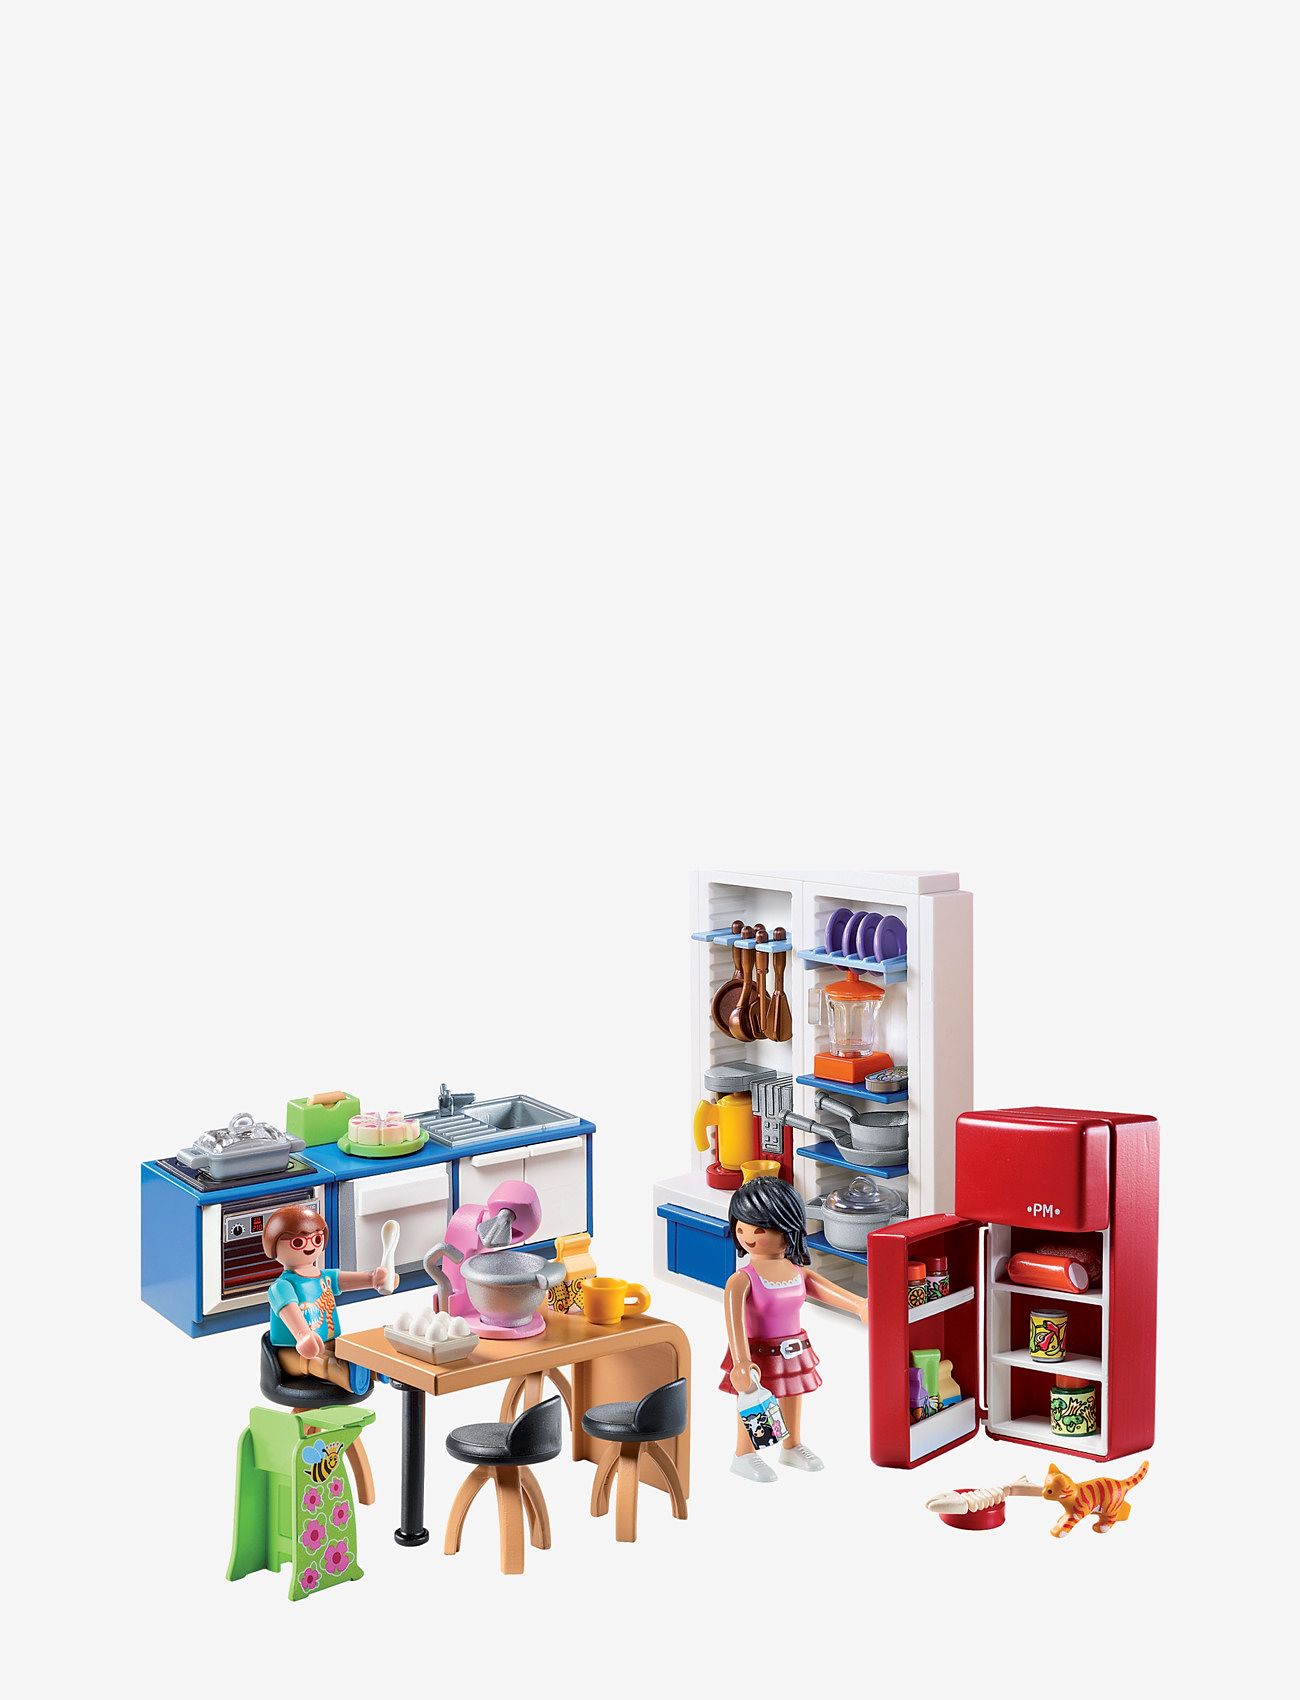 PLAYMOBIL - PLAYMOBIL Dollhouse Familiekjøkken - 70206 - de laveste prisene - multicolored - 1